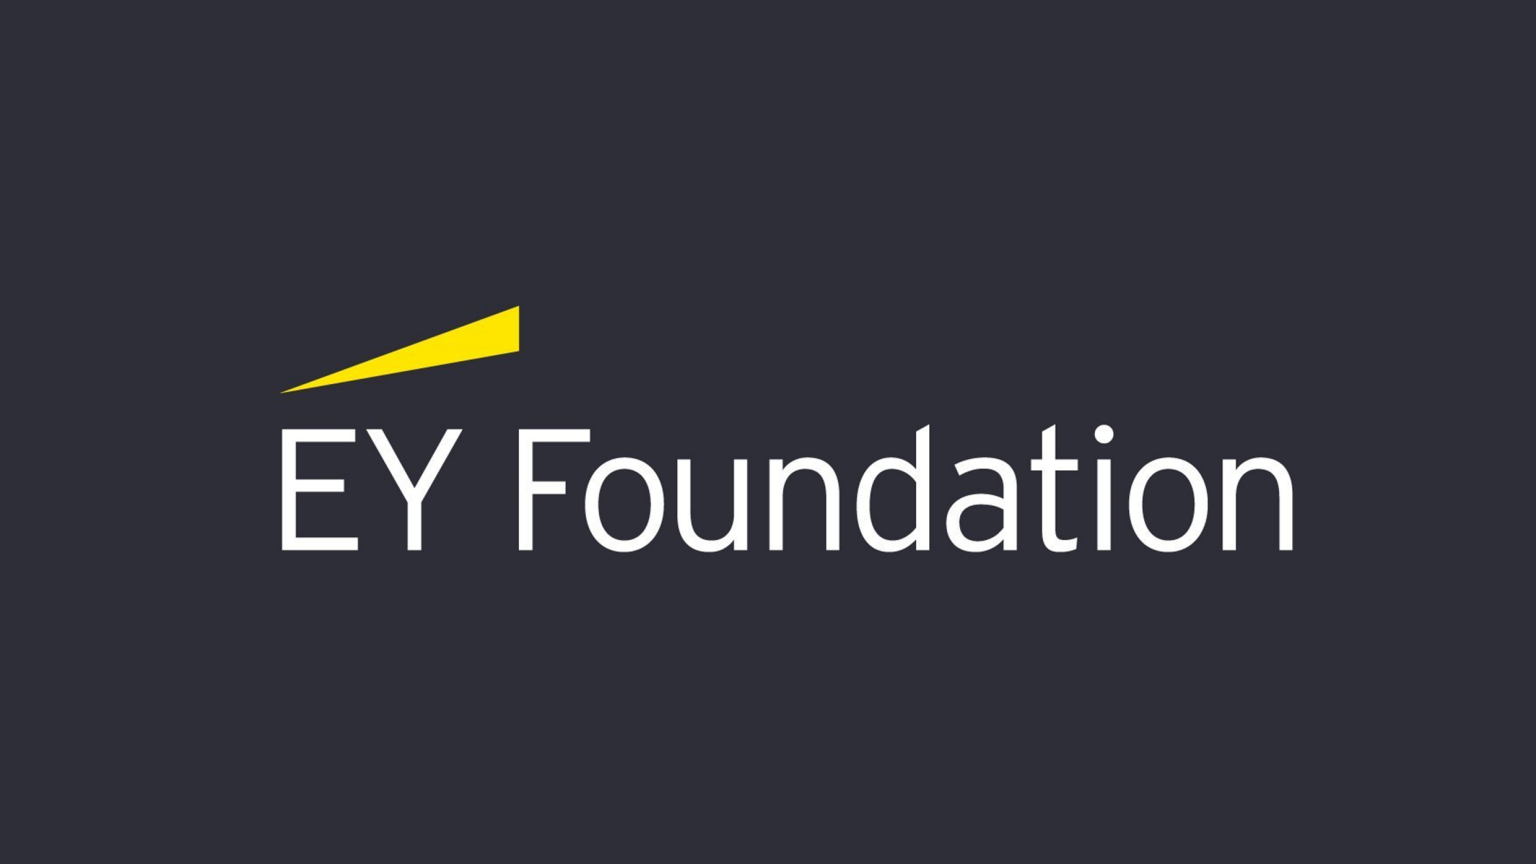 ey-foundation